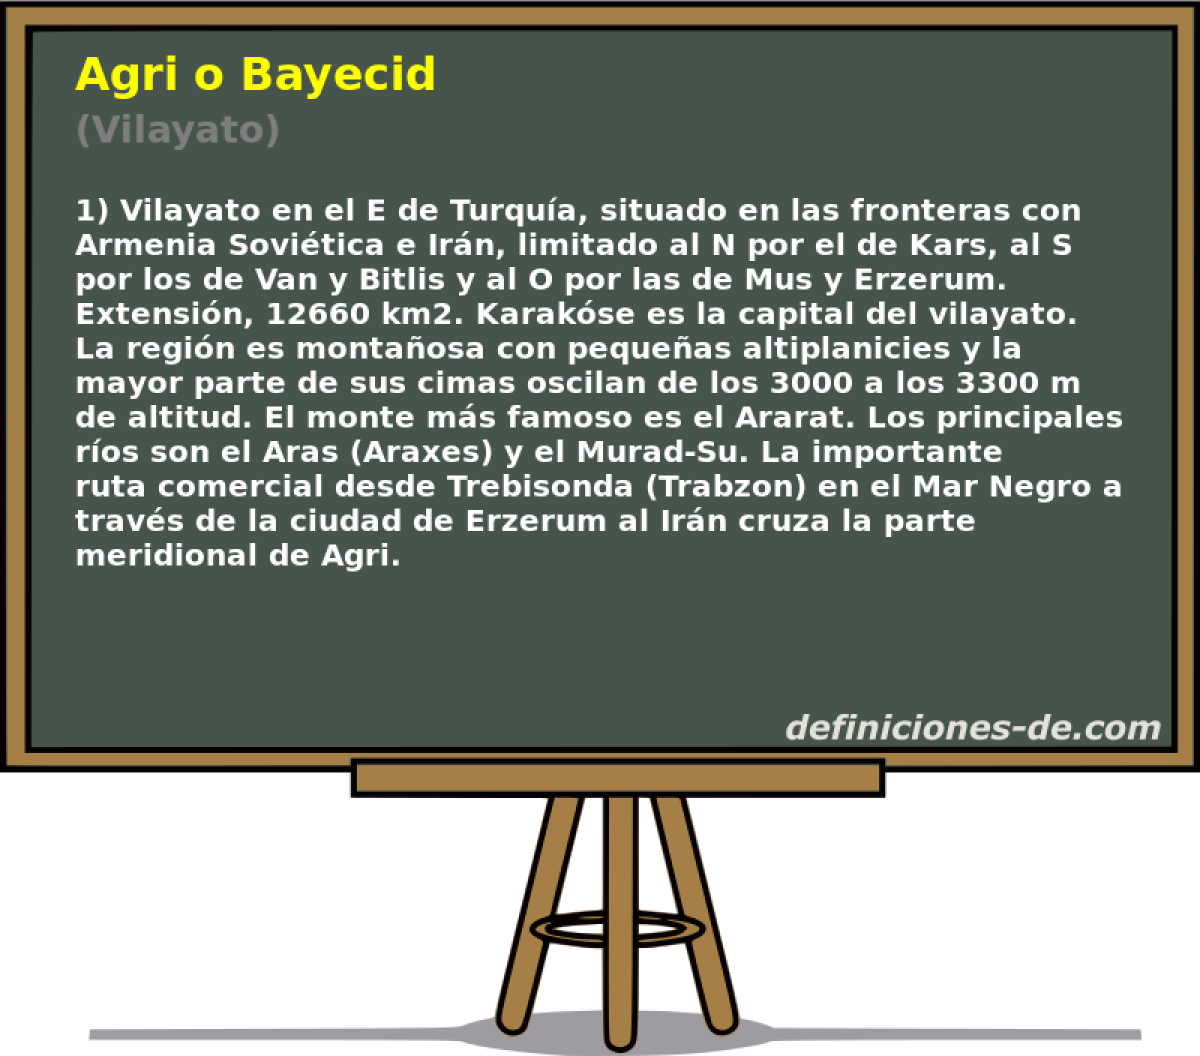 Agri o Bayecid (Vilayato)